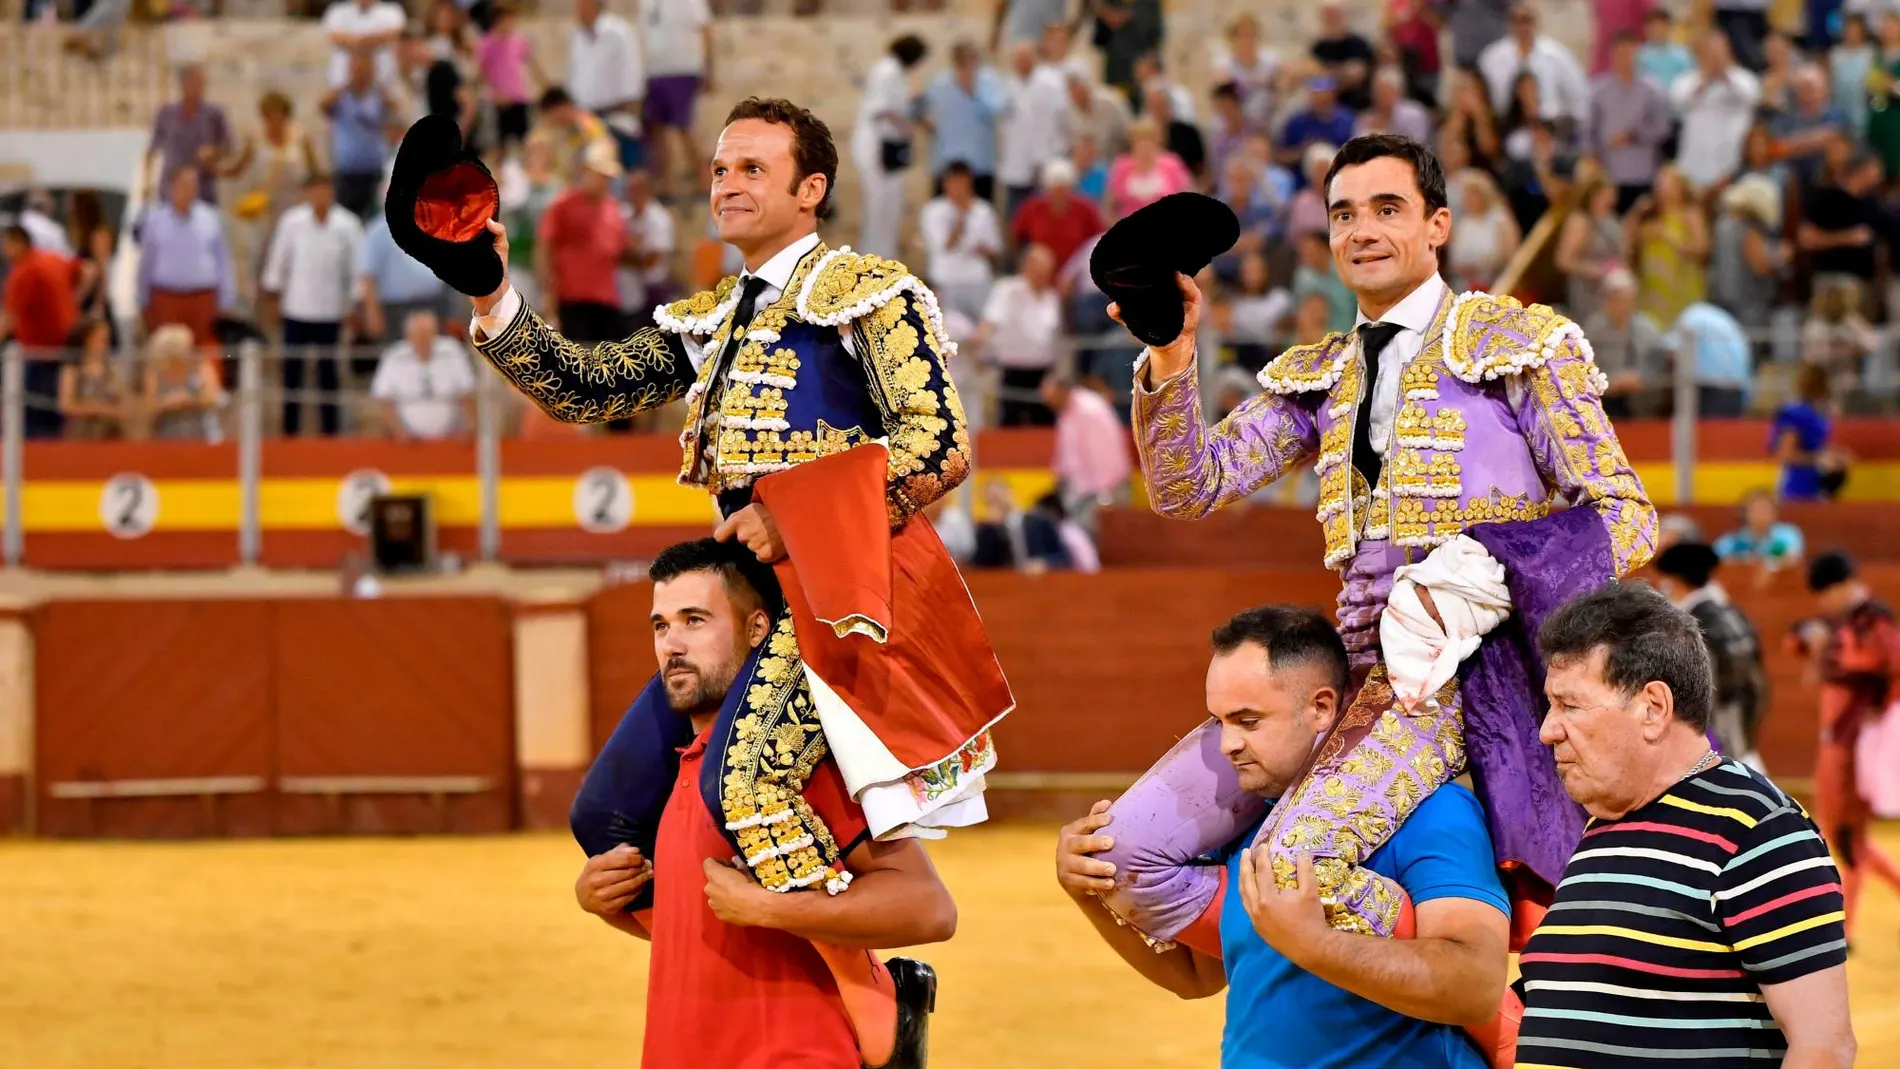 Los diestros Antonio Ferrera (i) y Paco Ureña (d) salen a hombros tras el festejo taurino celebrado hoy domingo en el coso tarurino de Almería. / Efe